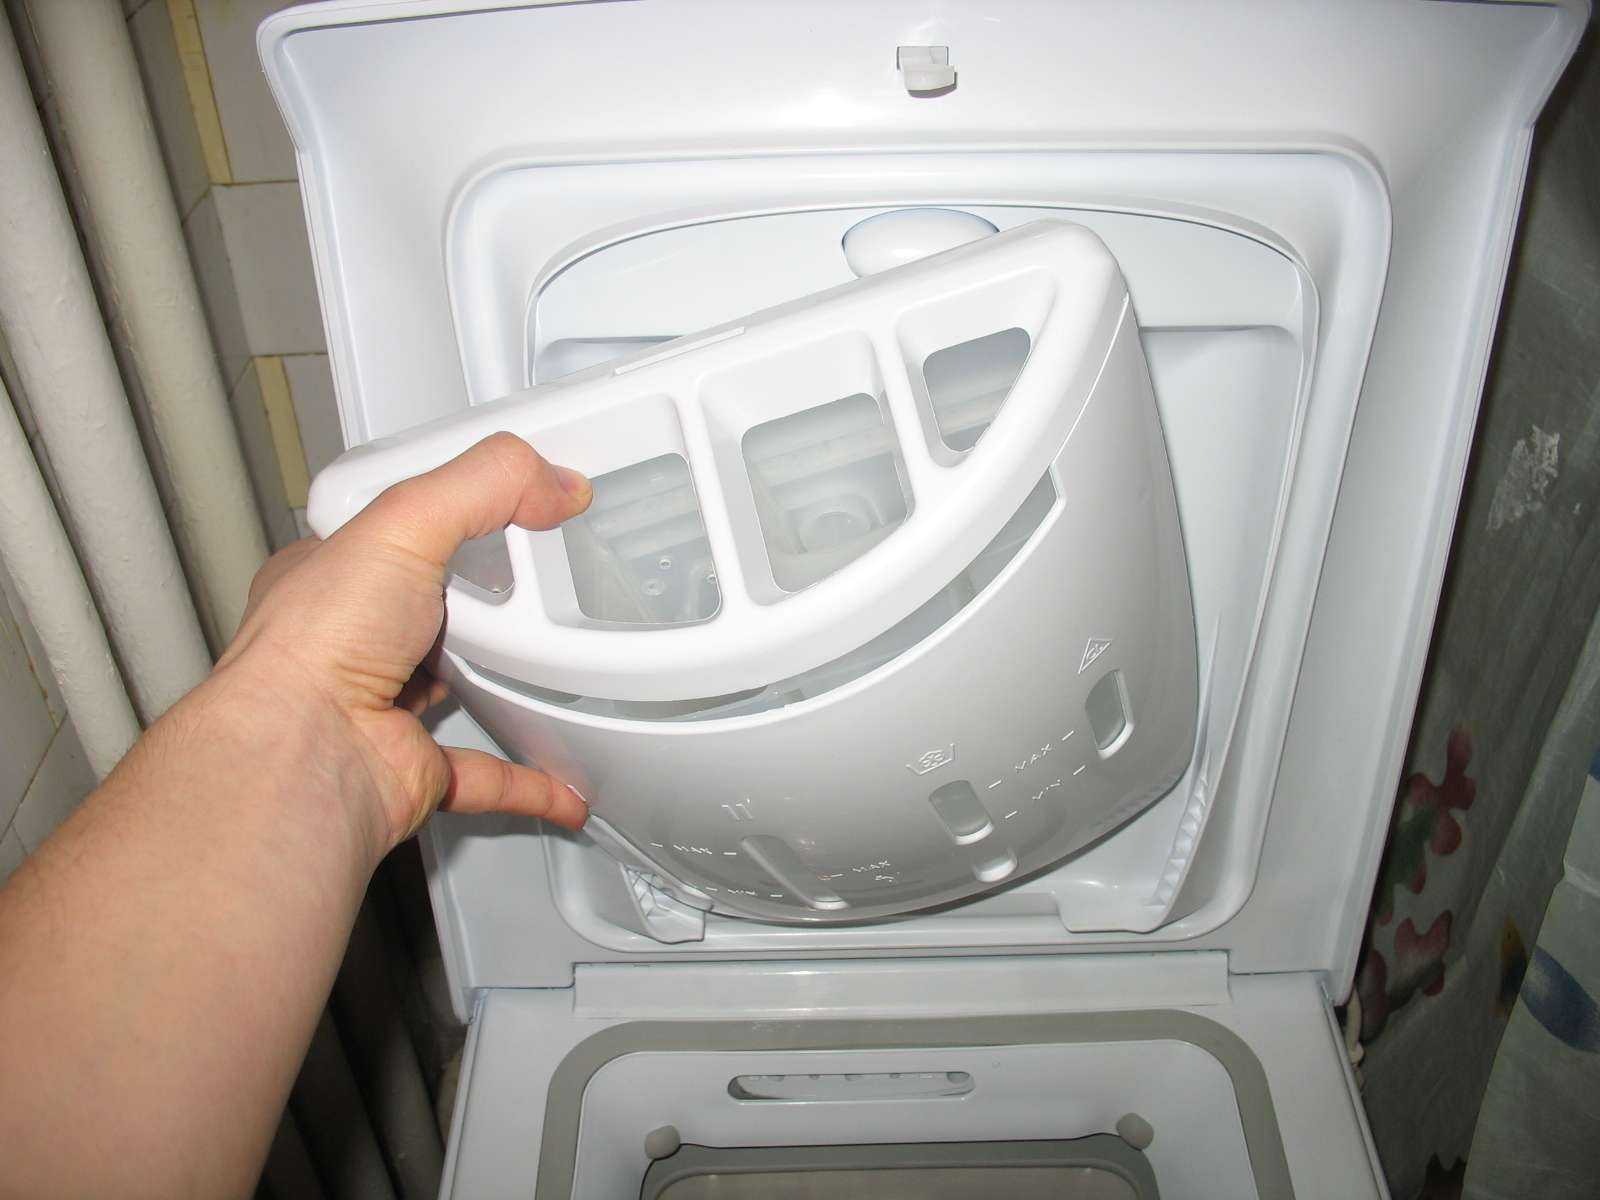 Как открыть стиральную машину хотпоинт аристон